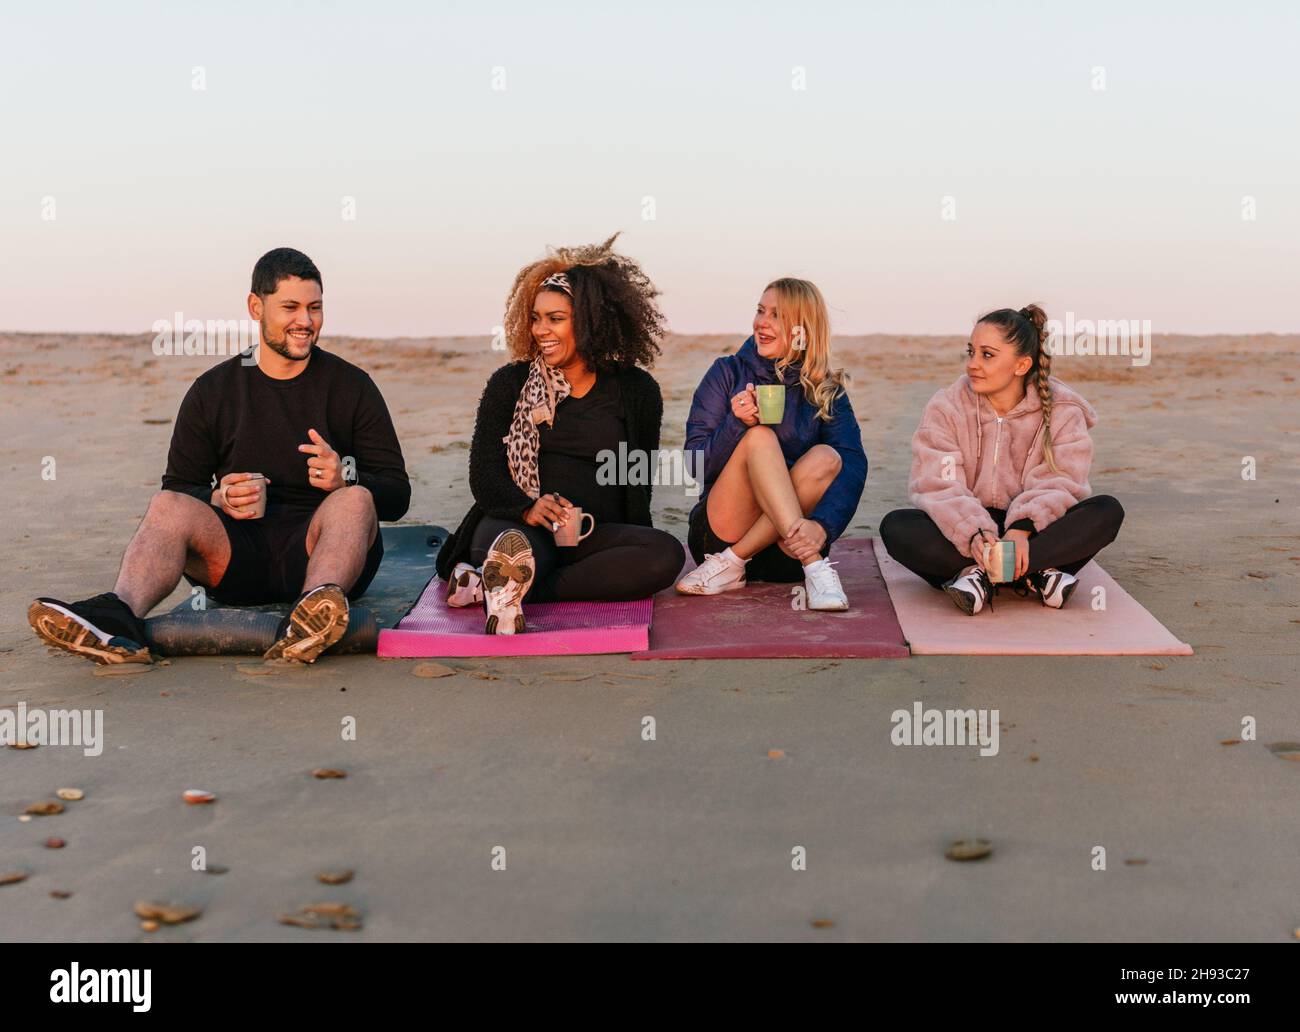 Multiethnische Gruppe von Menschen, die während des Sonnenuntergangs auf Matten mit Blick auf den Meereshorizont sitzen Stockfoto